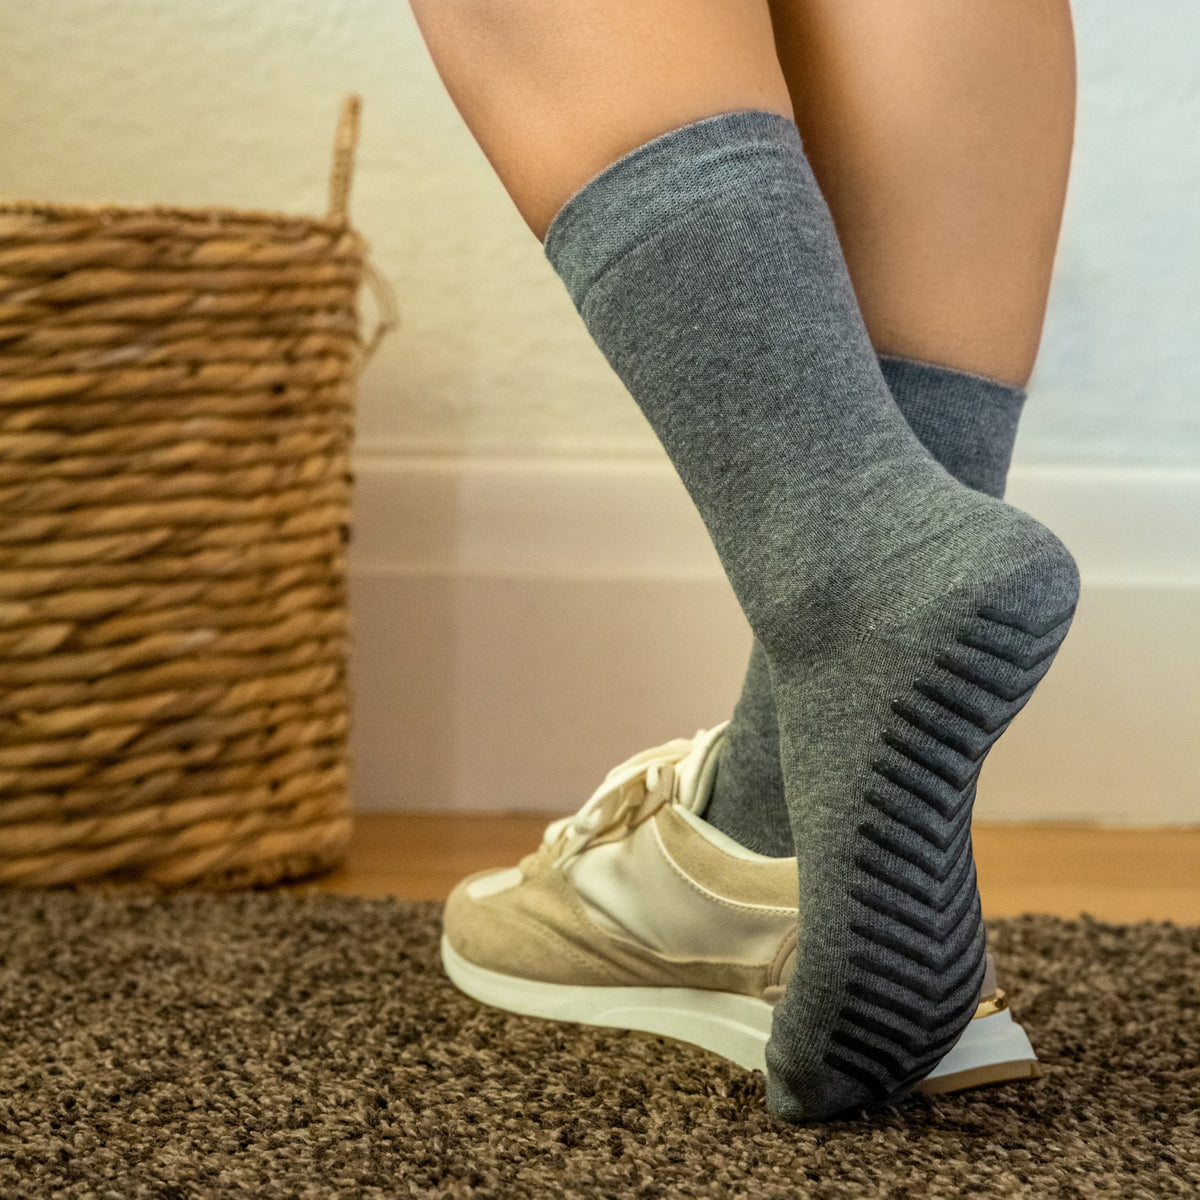 Fuzzy Slipper Socks for Men - Gripjoy Socks